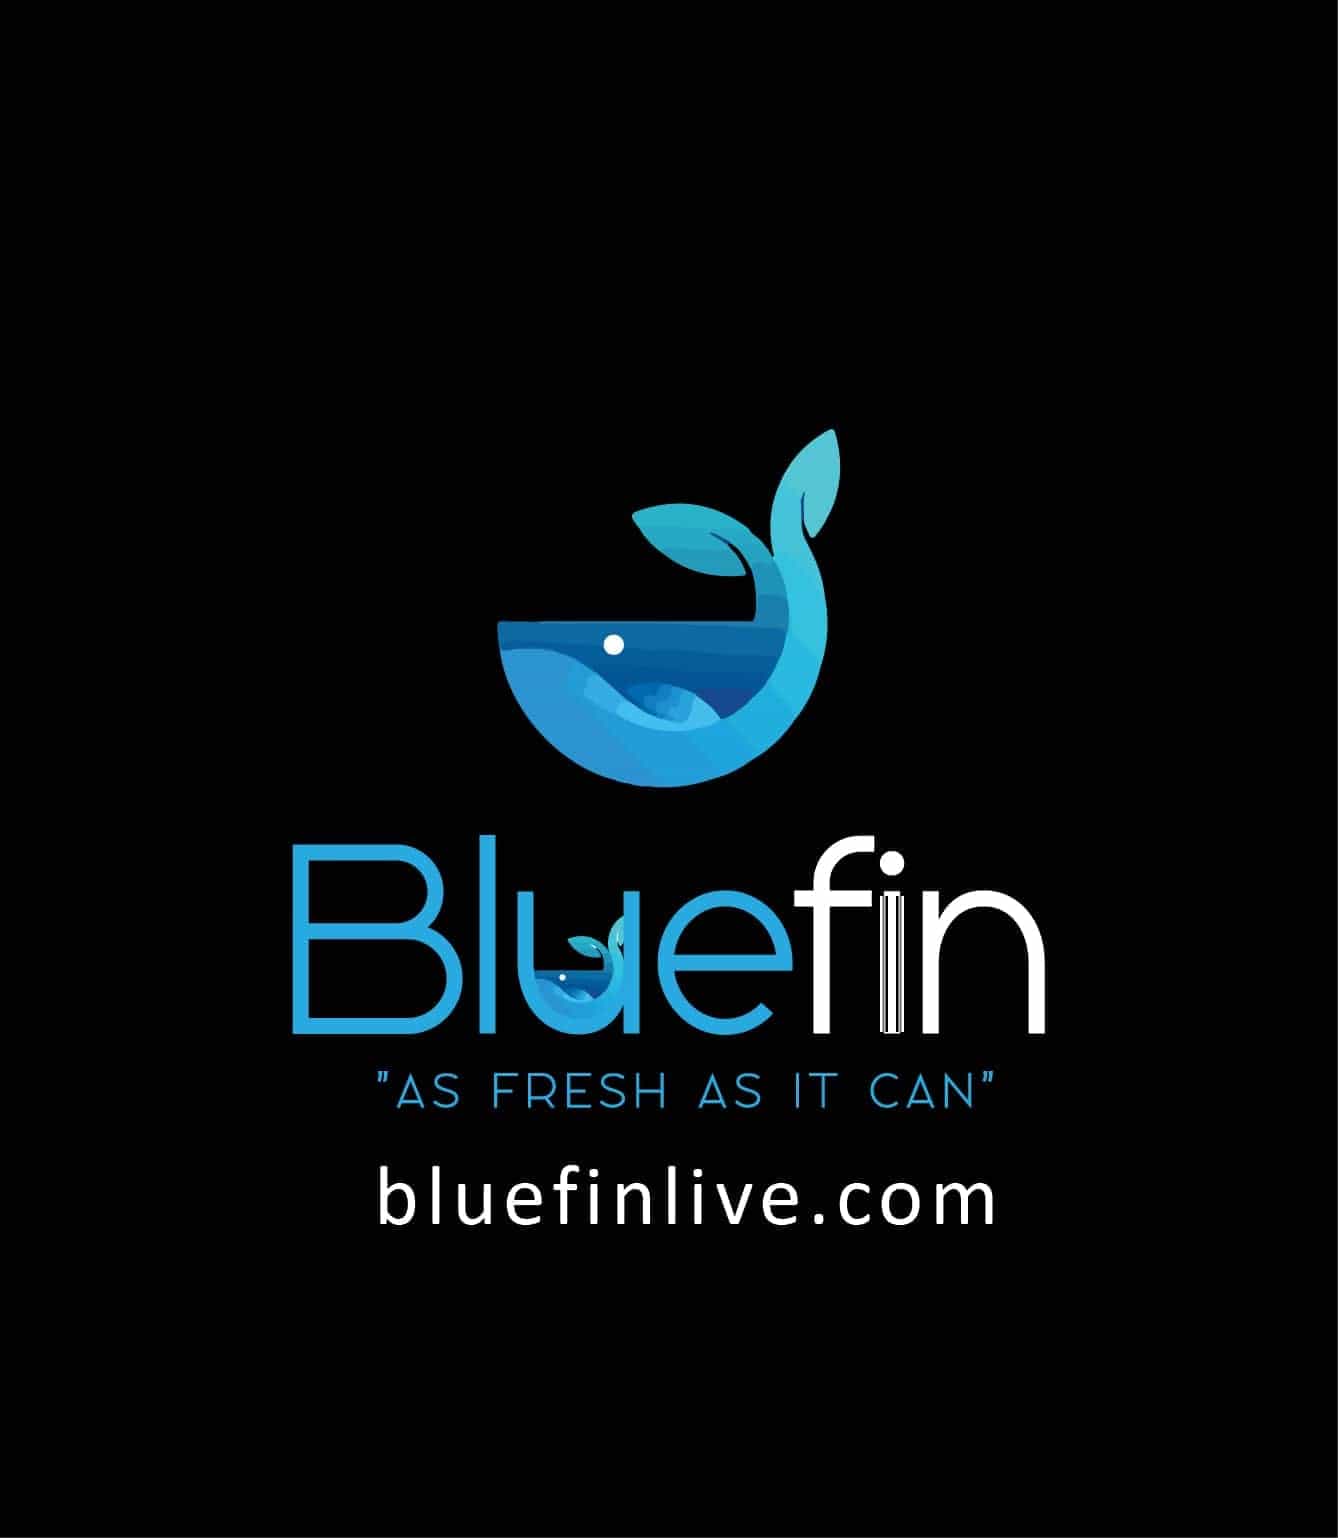 Bluefin live.com